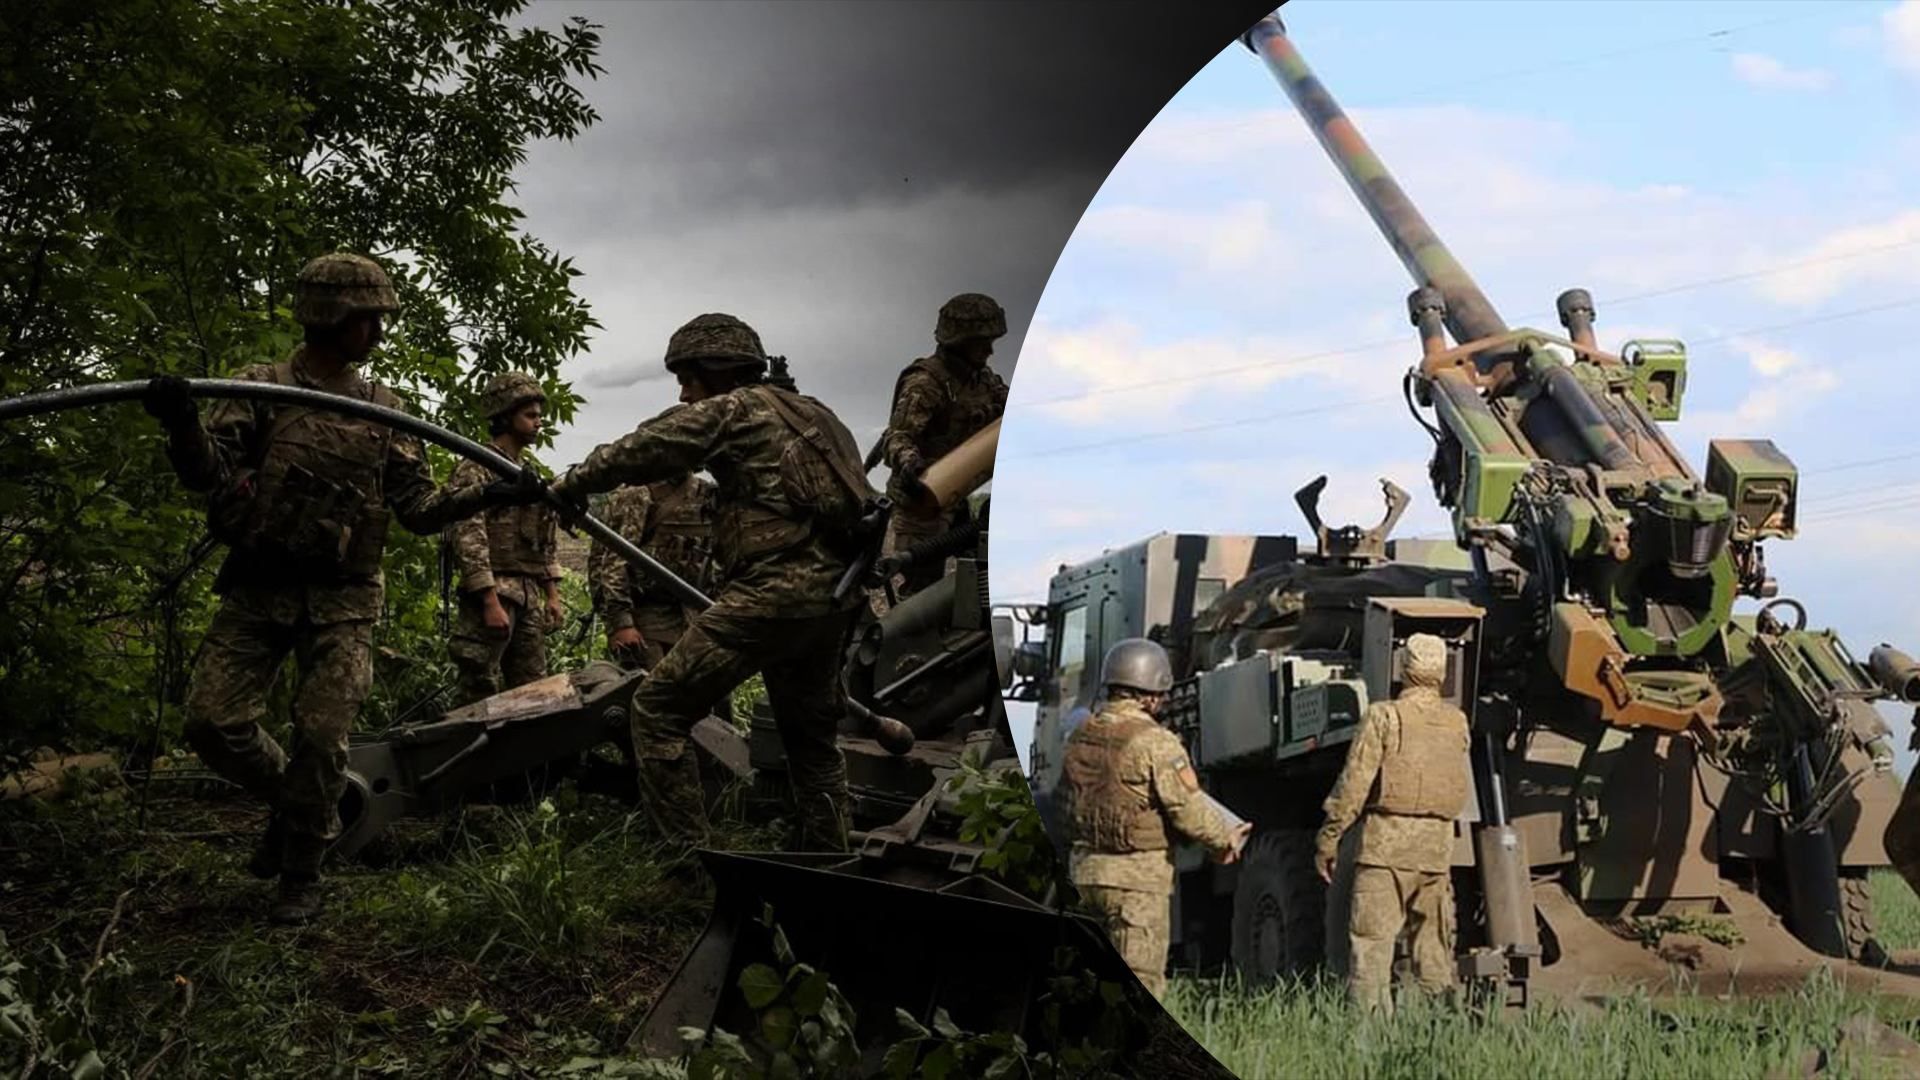 Ворожі обстріли та спроби штурму на Донбасі: карта бойових дій станом на 9 червня